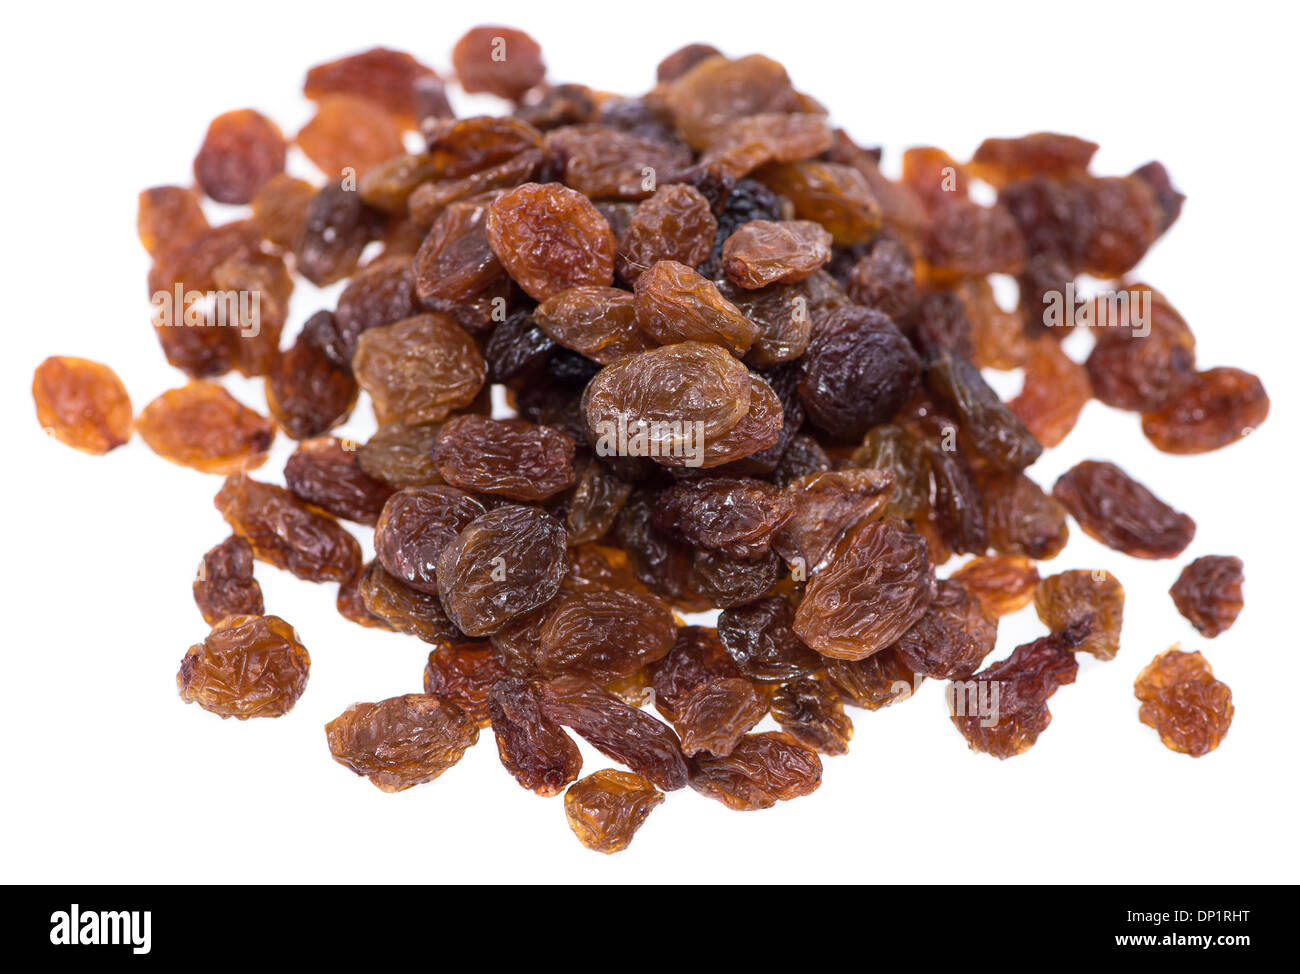 Raisins isolated on white background Stock Photo - Alamy